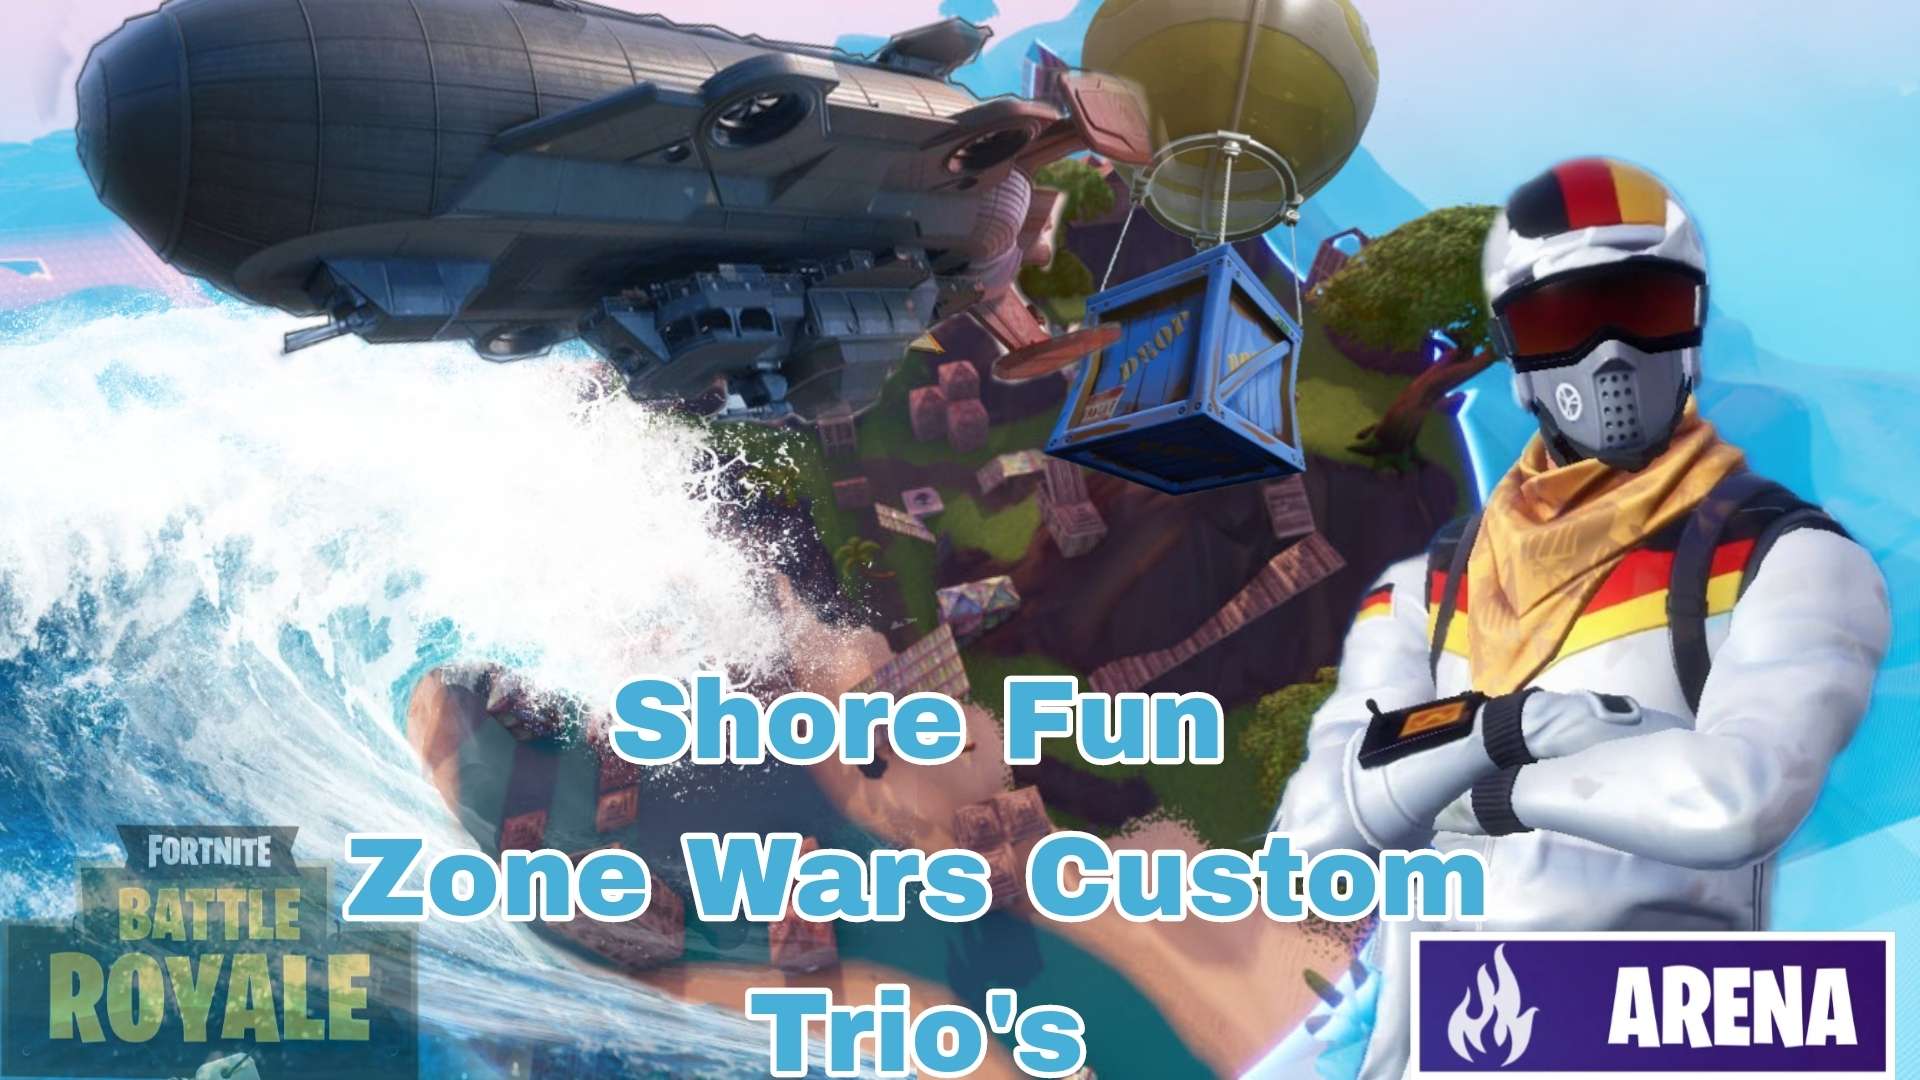 Shore Fun Zone Wars Custom Trio's